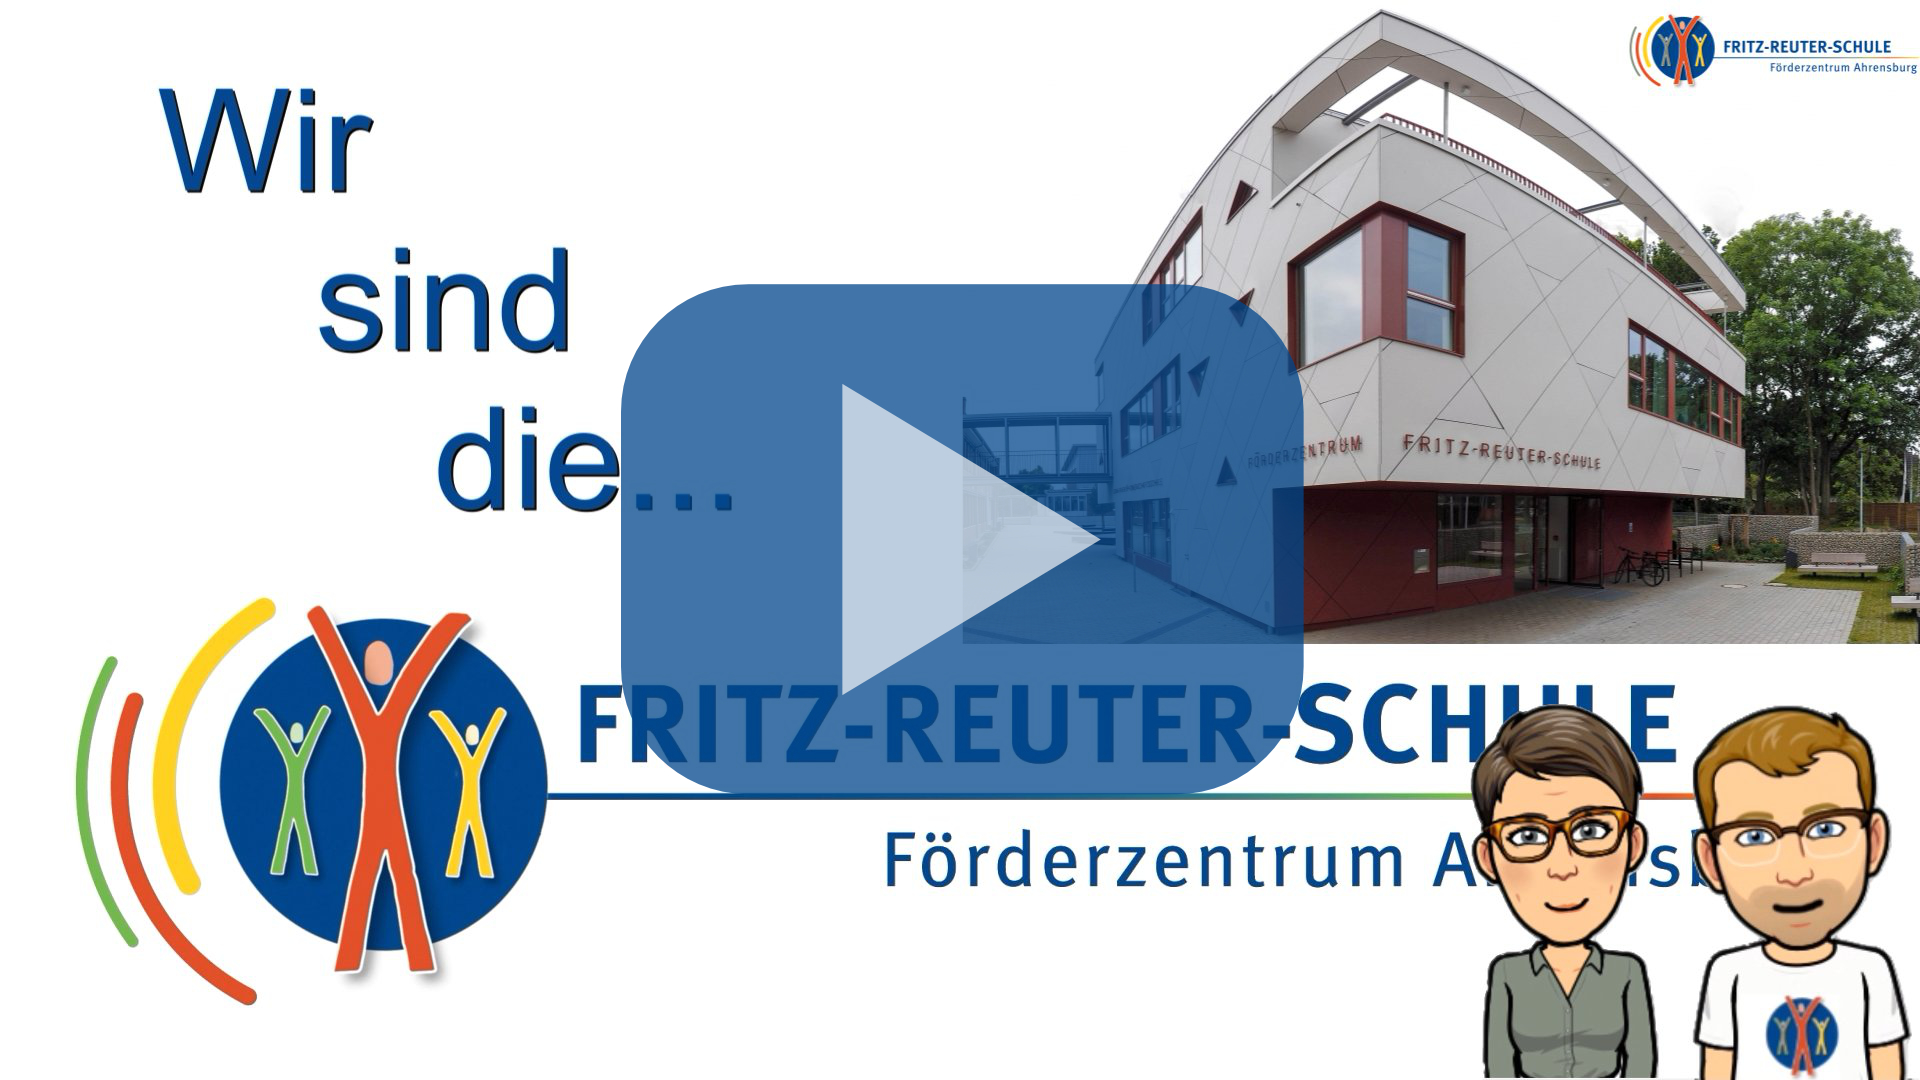 Vorstellungsvideo der Fritz-Reuter-Schule